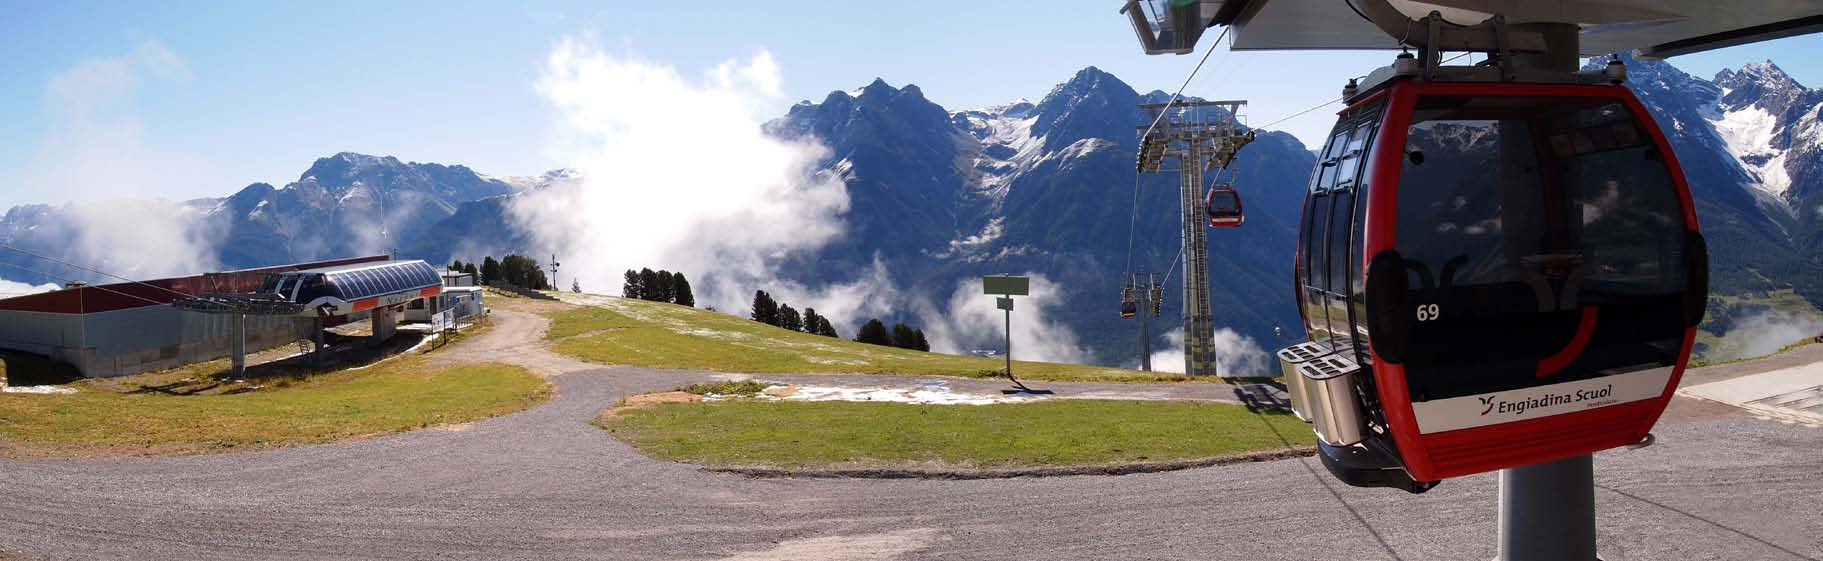 Bergstation Motta Naluns: Im Sommer kann man das Motta Naluns-Gebiet durch verschiedene Aktivitäten erleben. Z. B. beim Wandern, Biken, Trottinett fahren, Gleitschirm fliegen.